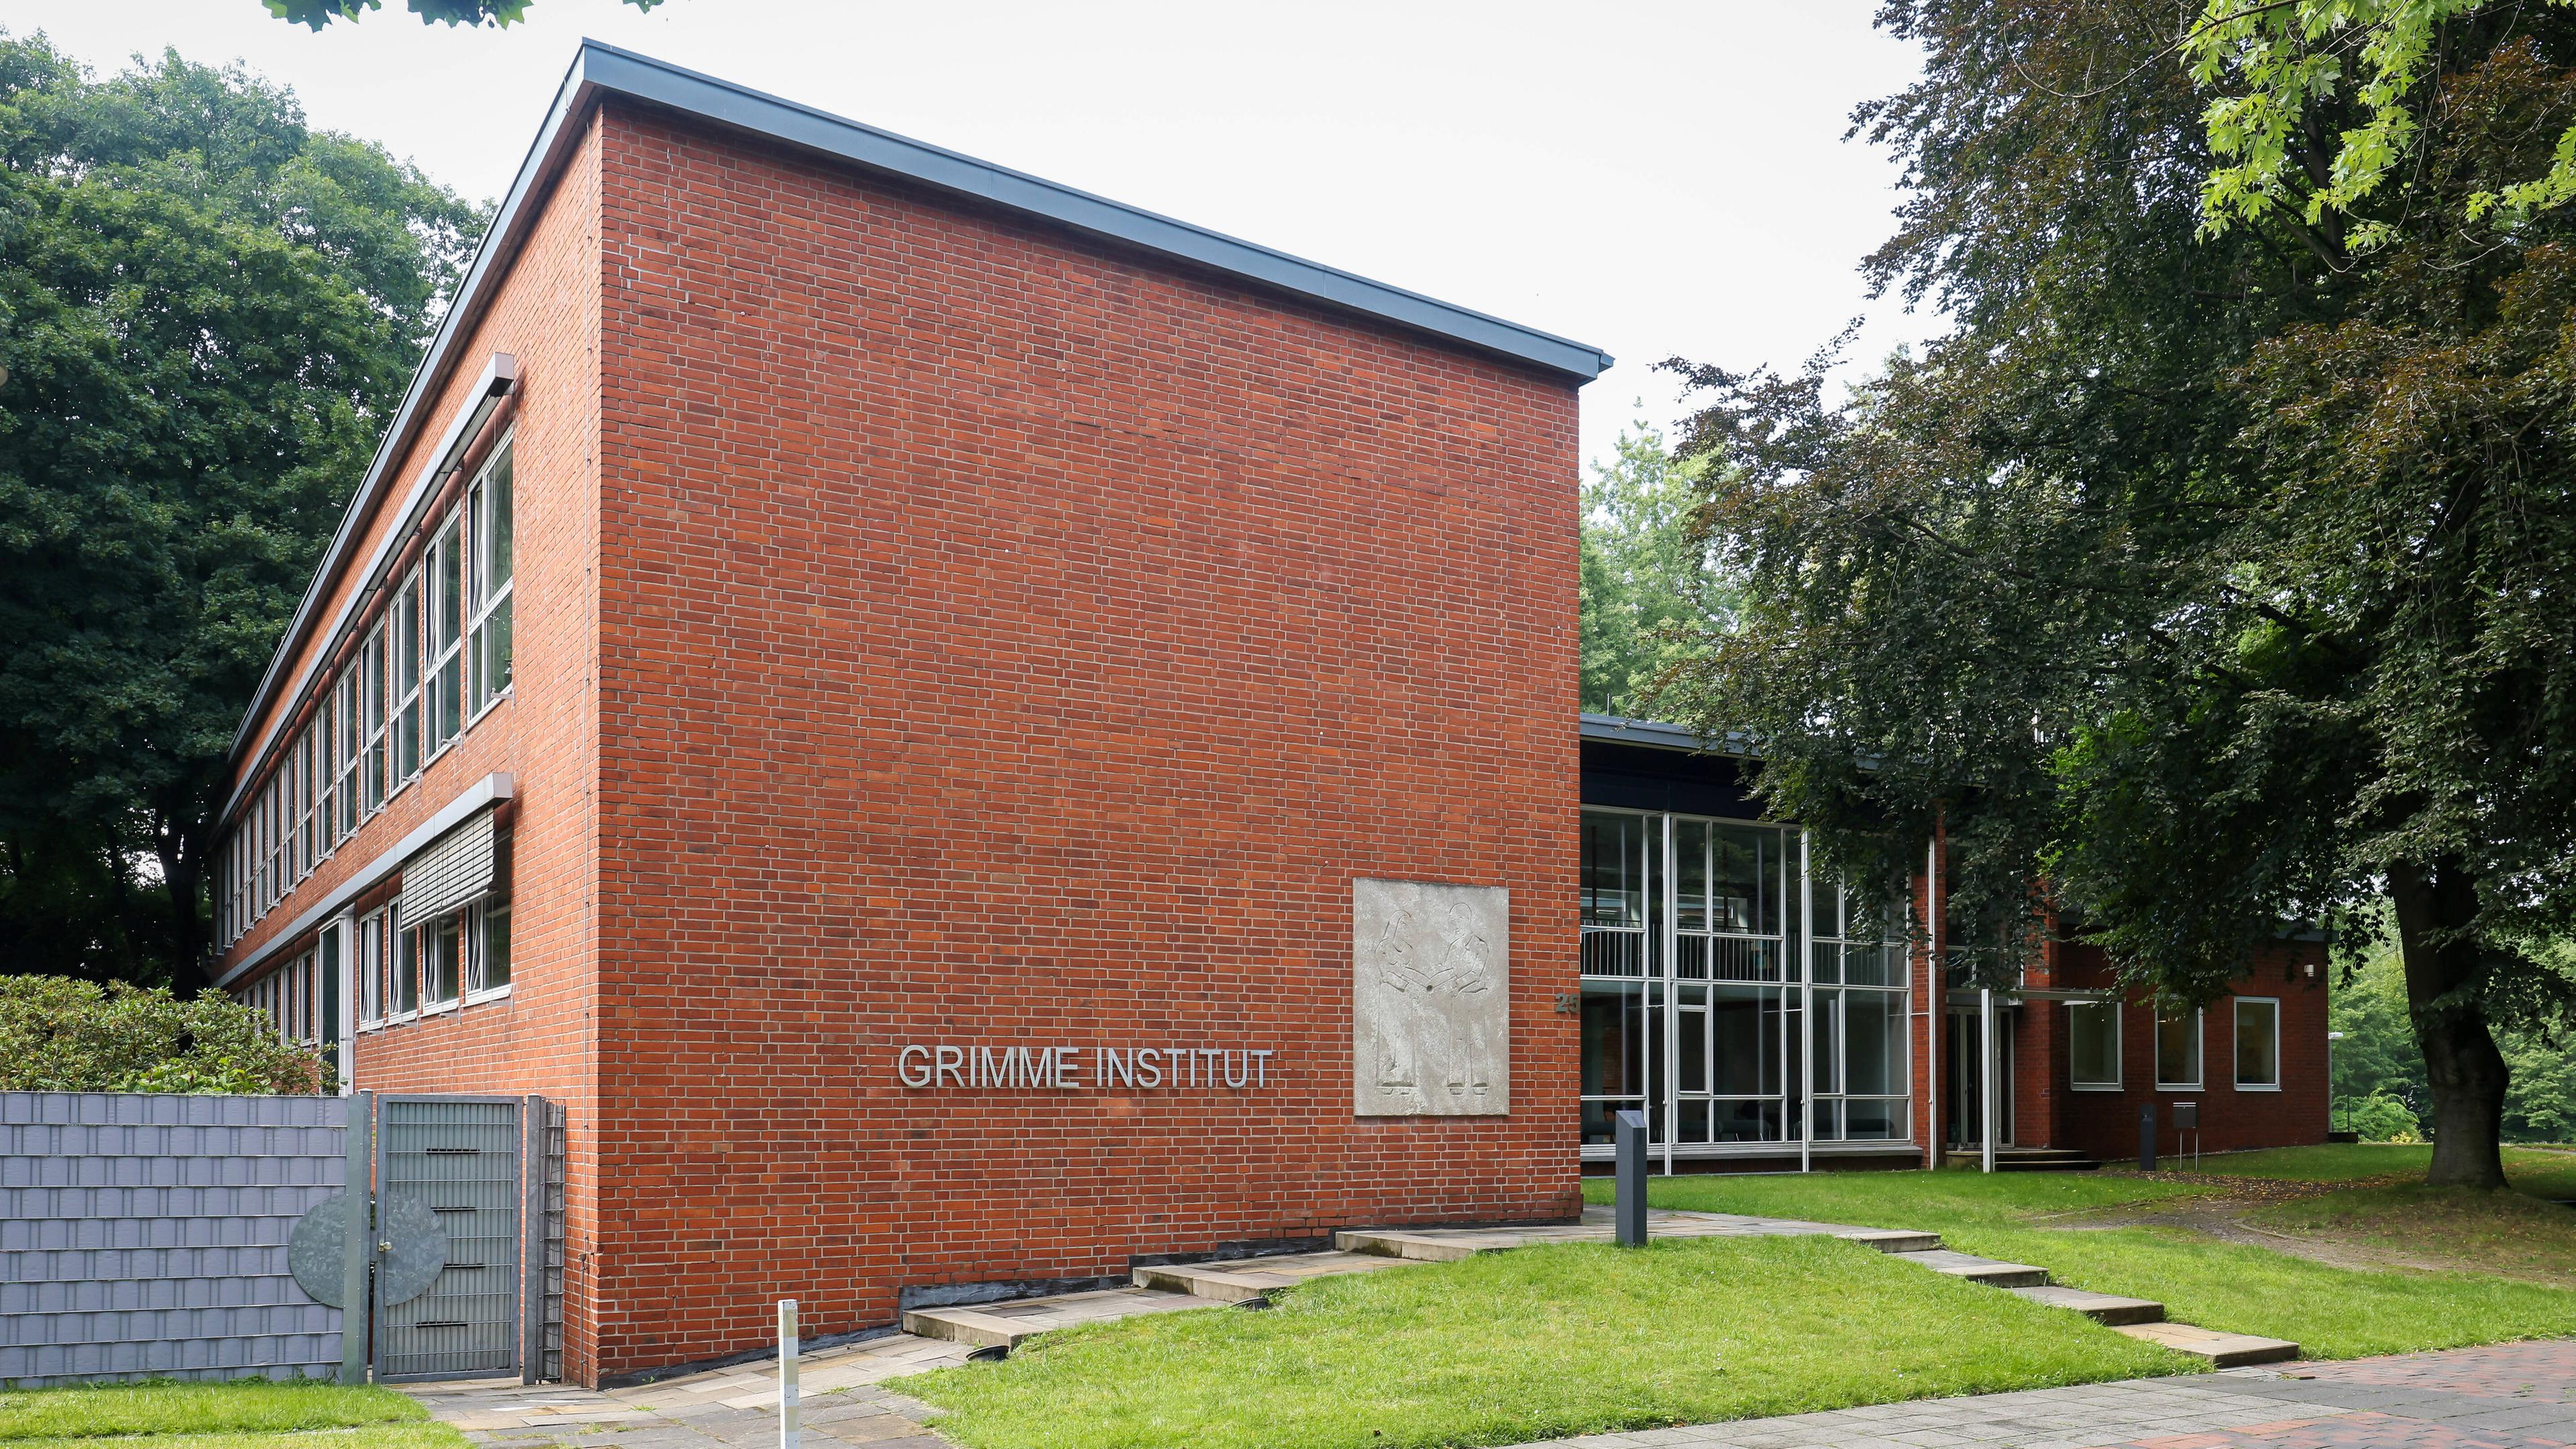 Grimme-Institut, Gesellschaft für Medien, Bildung und Kultur mbH in Marl, aufgenommen am 05.08.2021